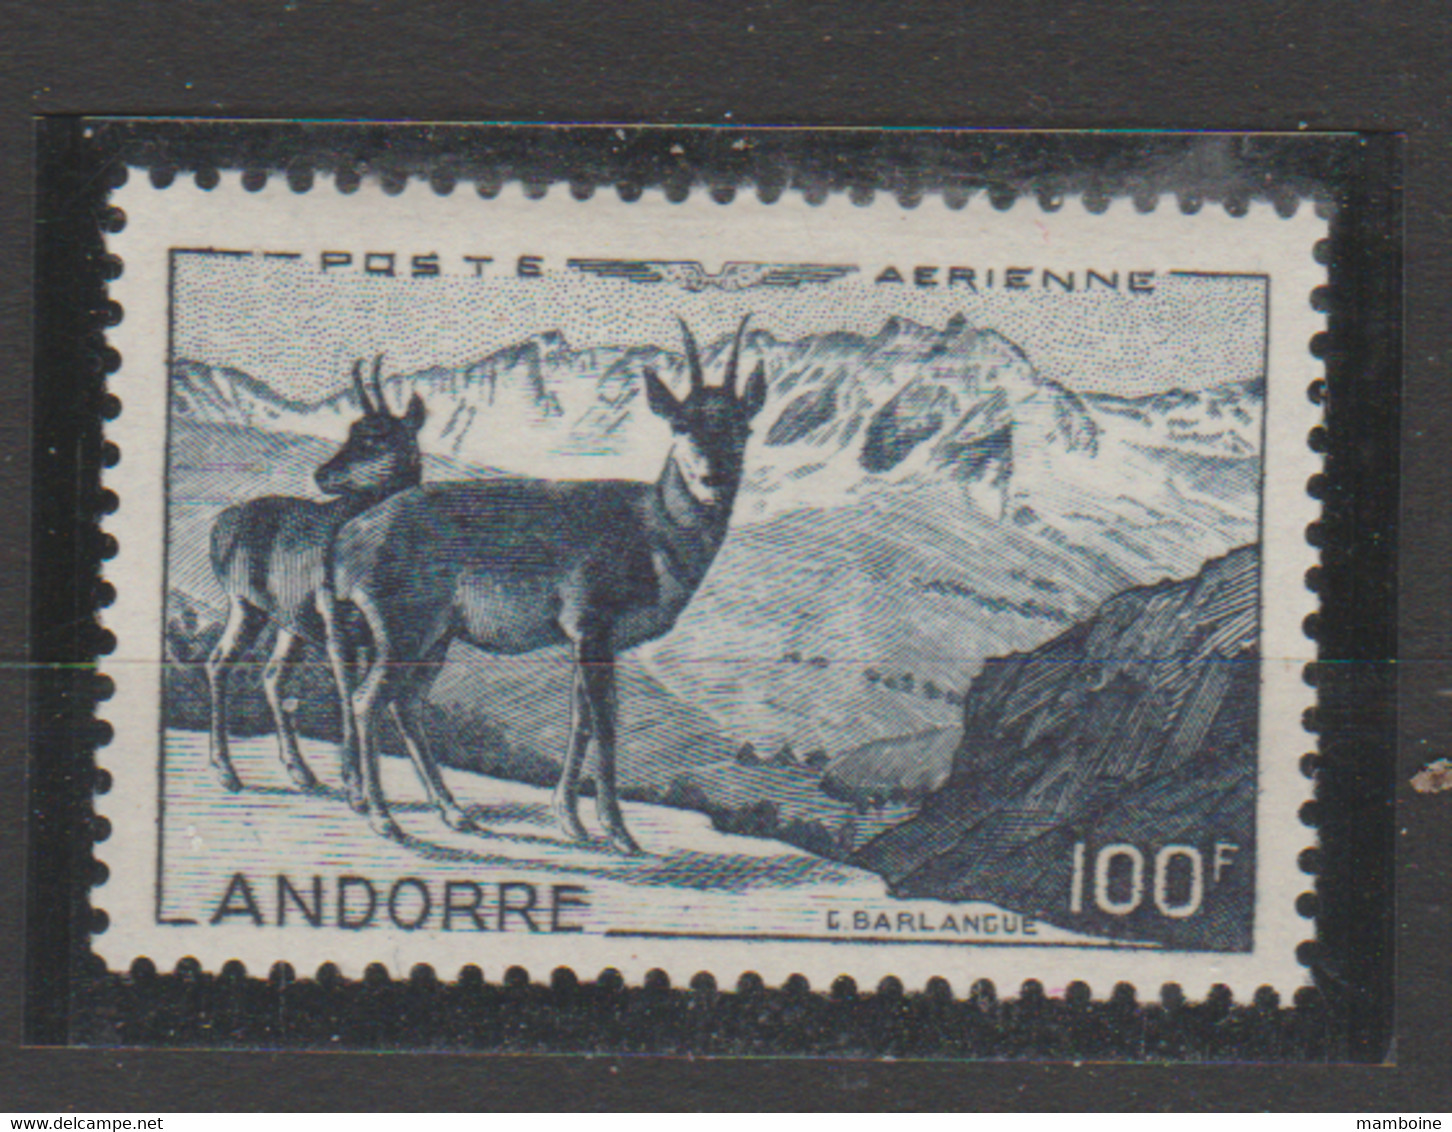 ANDORRE  Aérien 1950  N° 1 Neuf X   Isard - Airmail